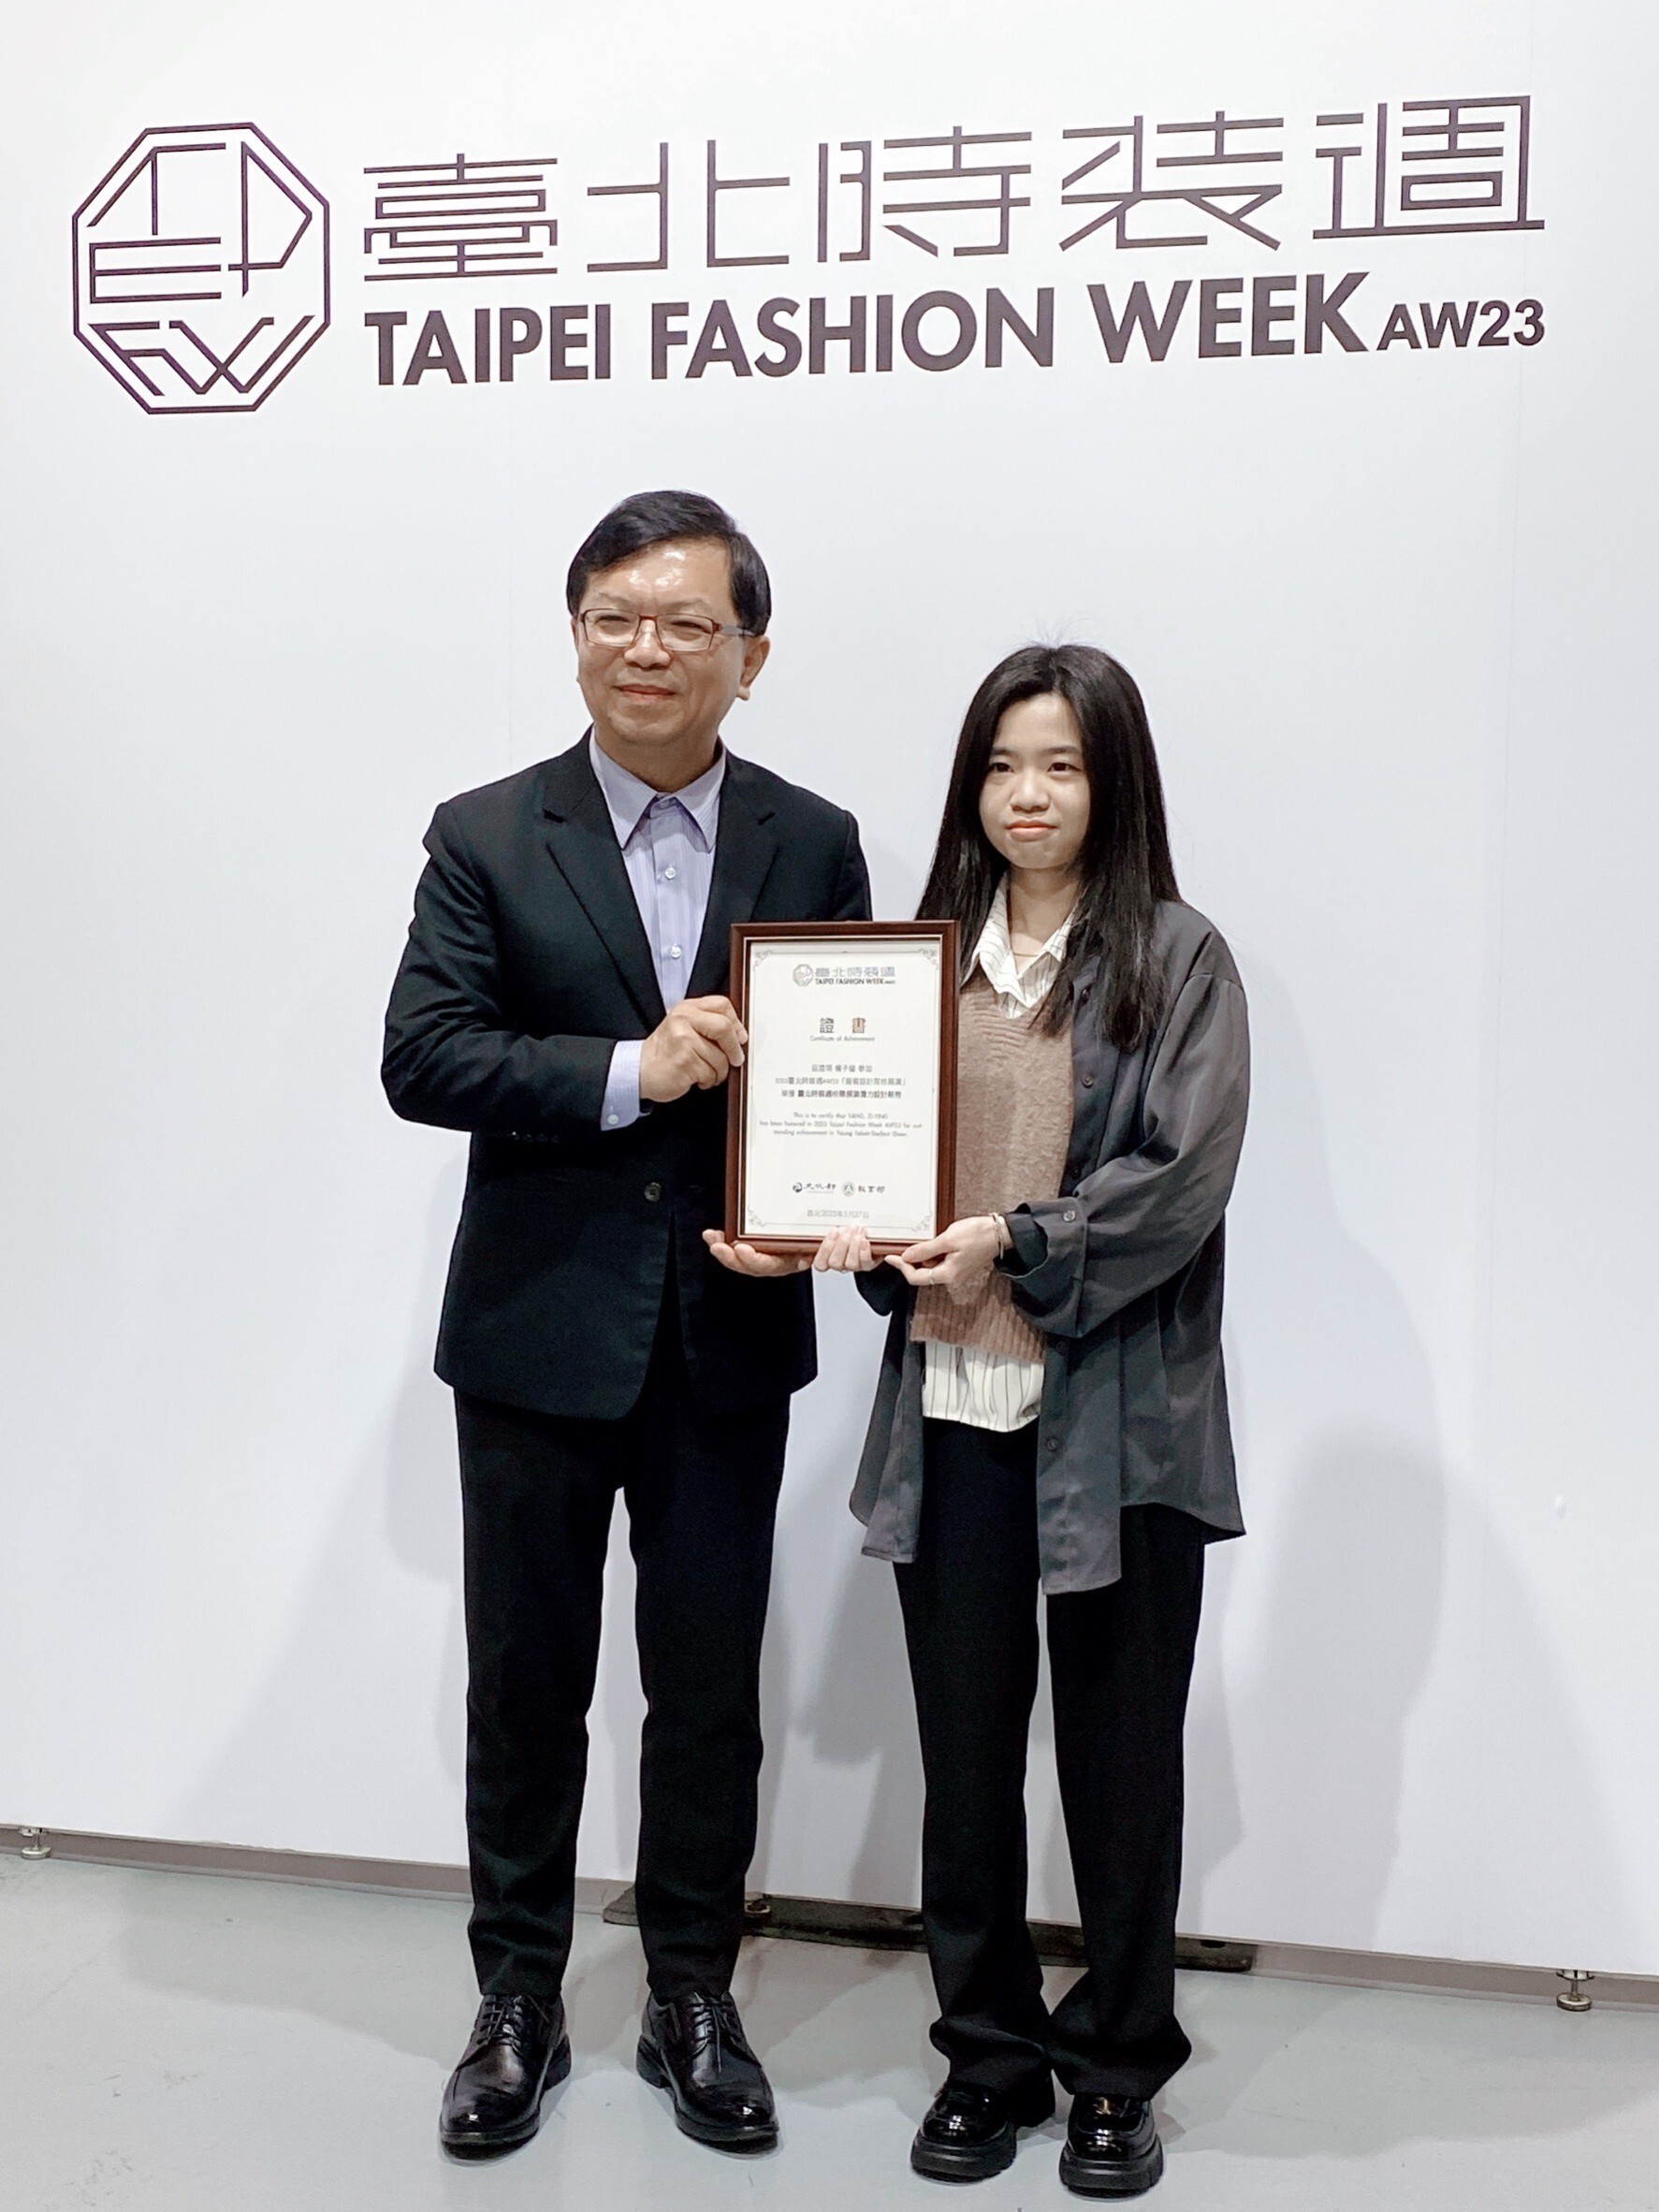 楊子瑩同學榮獲文化部/教育部舉辦2023臺北時裝週AW23「服裝設計院校展演」潛力設計新秀獎。